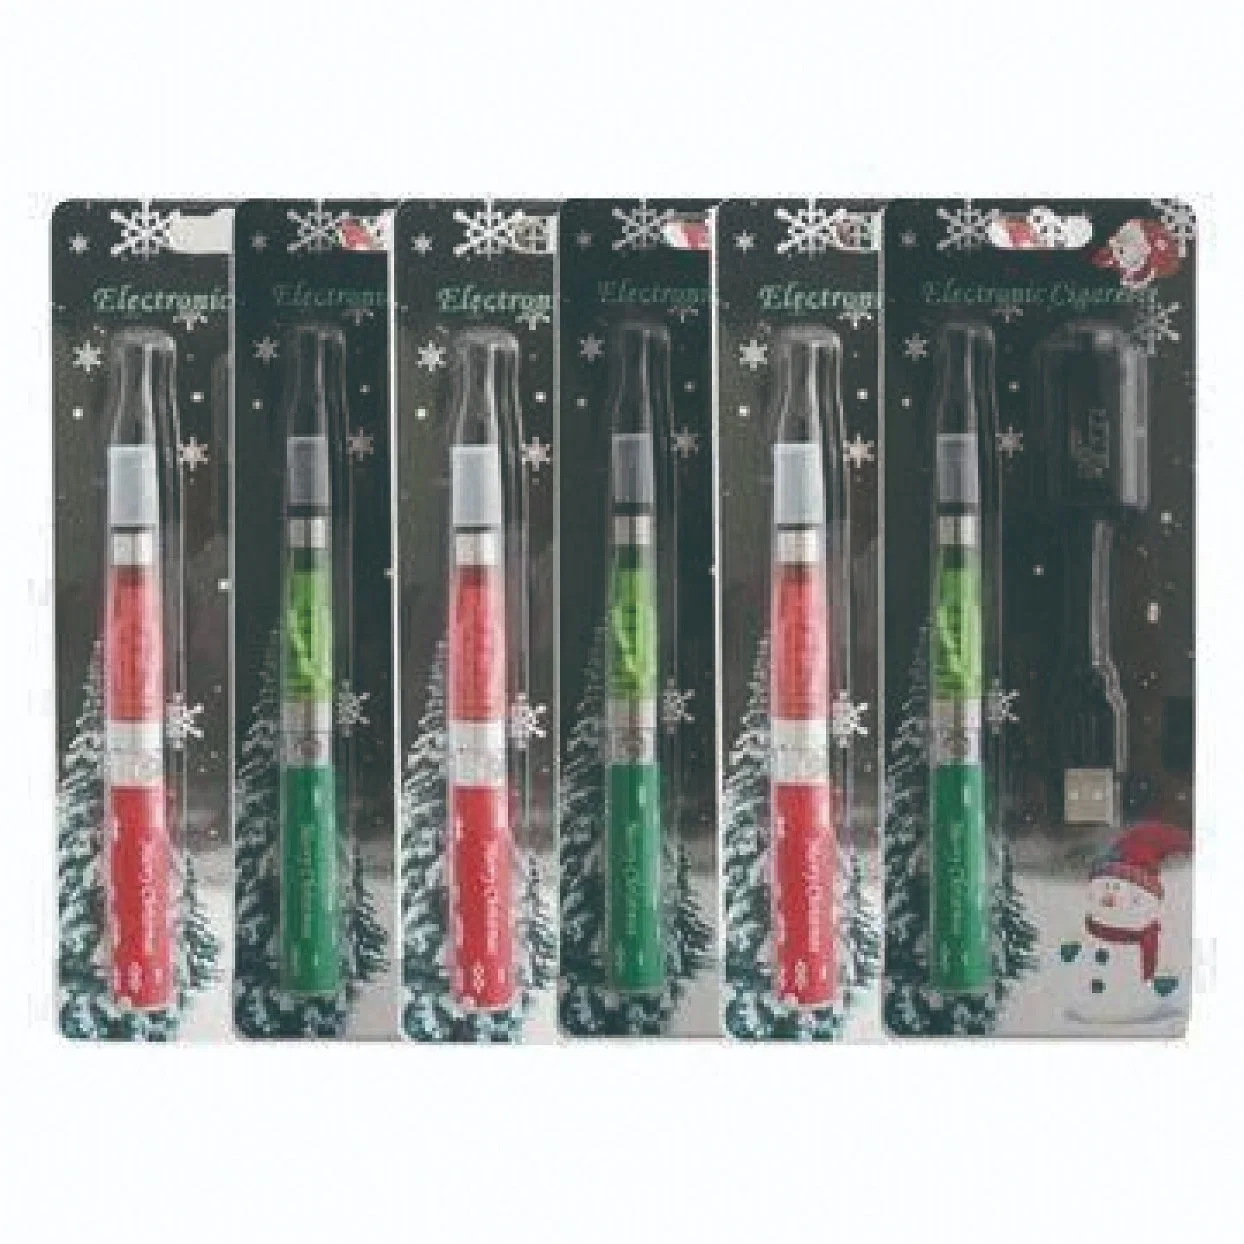 Nouveaux produits 2014 E-cigarette couleur, vaporisateurs Vente en gros CE4 EGO Starter kits